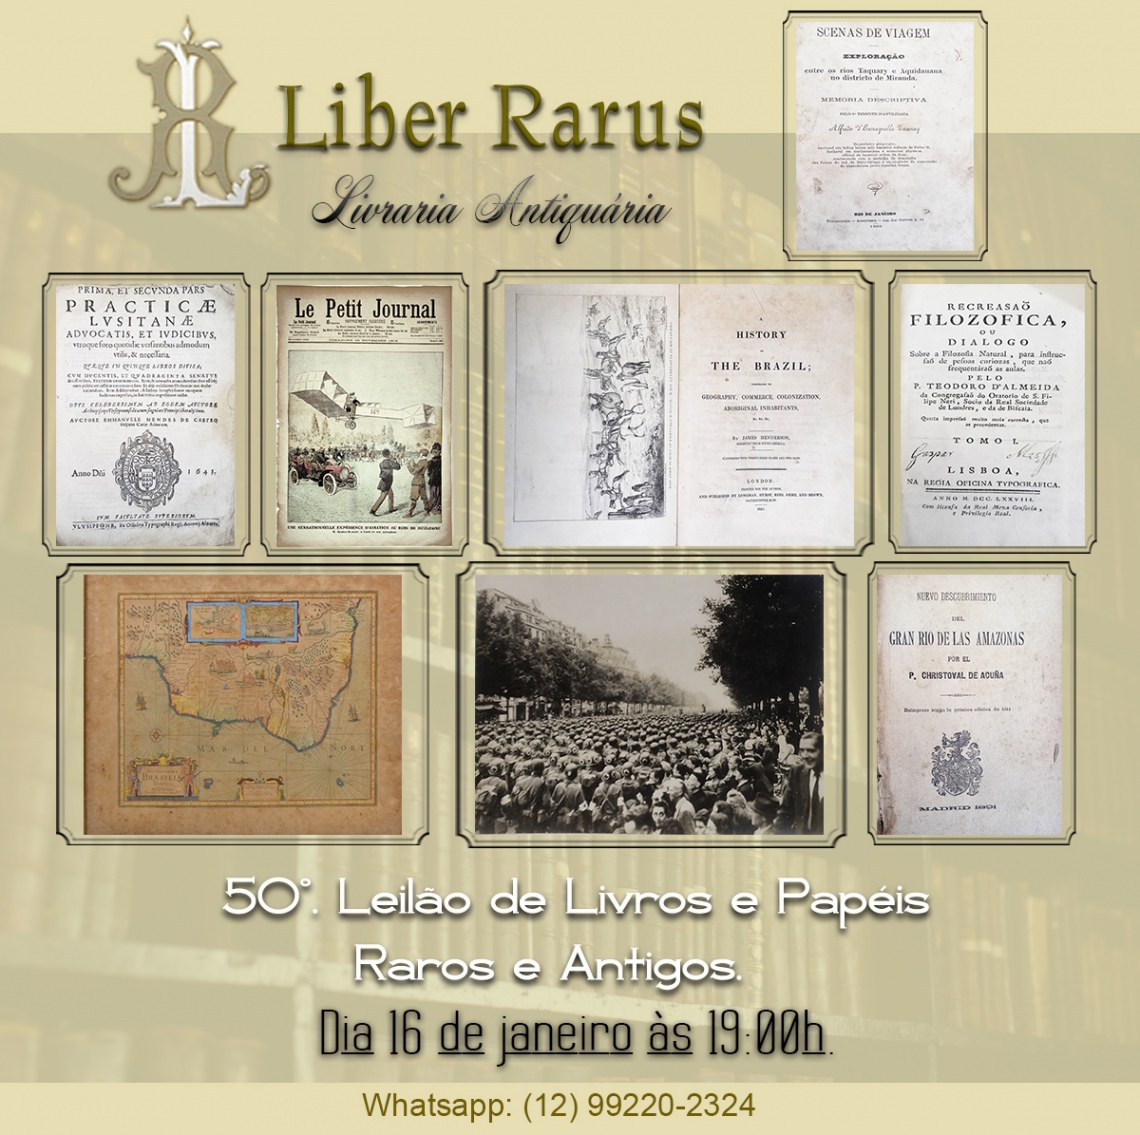 50º Leilão de Livros e Papéis Raros e Antigos - Liber Rarus - 16/01/2023 - 19h